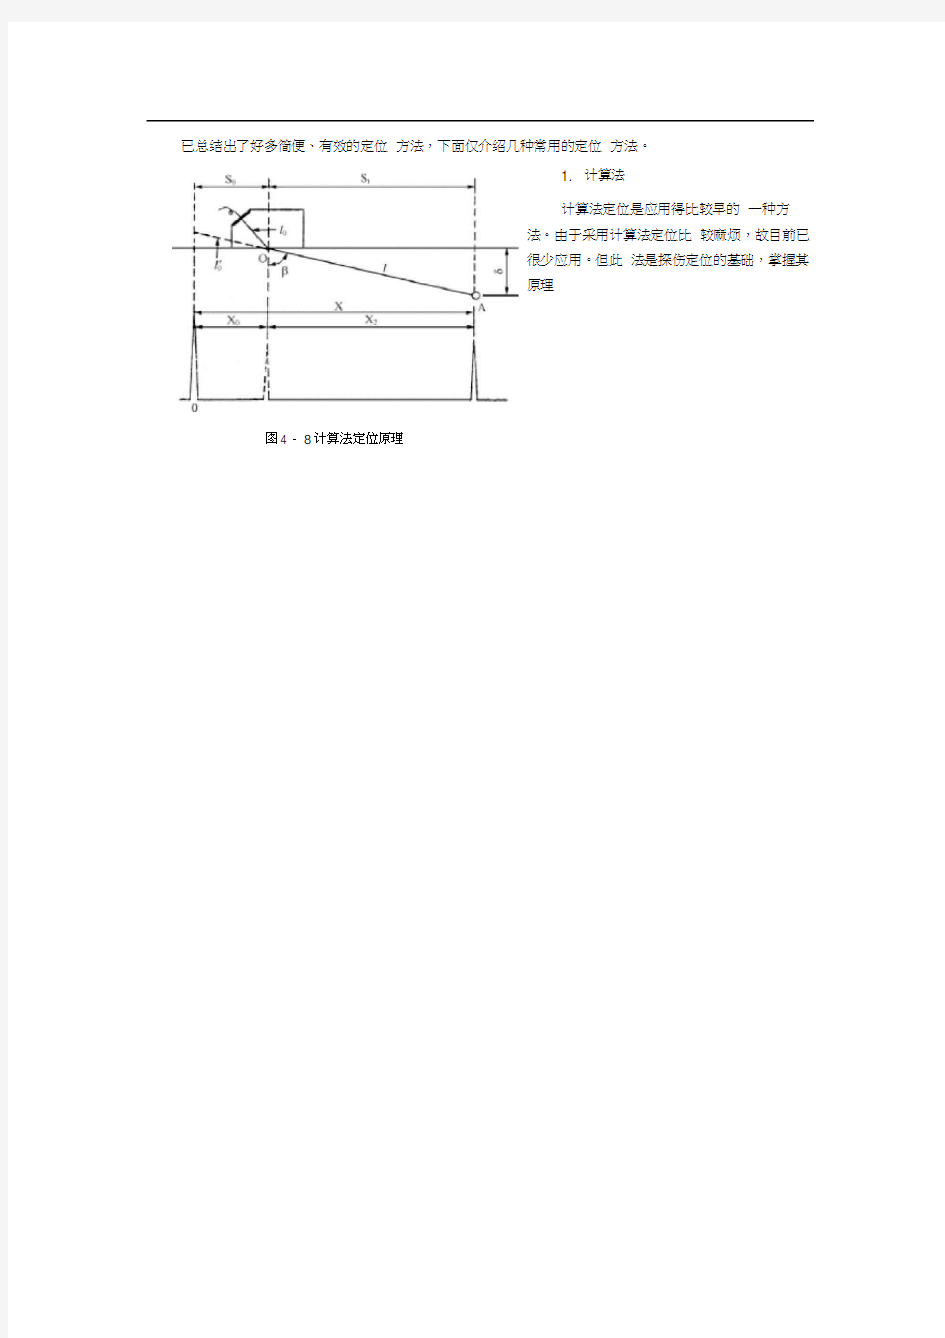 焊缝超声波探伤(第三节焊缝超声波探伤定位)